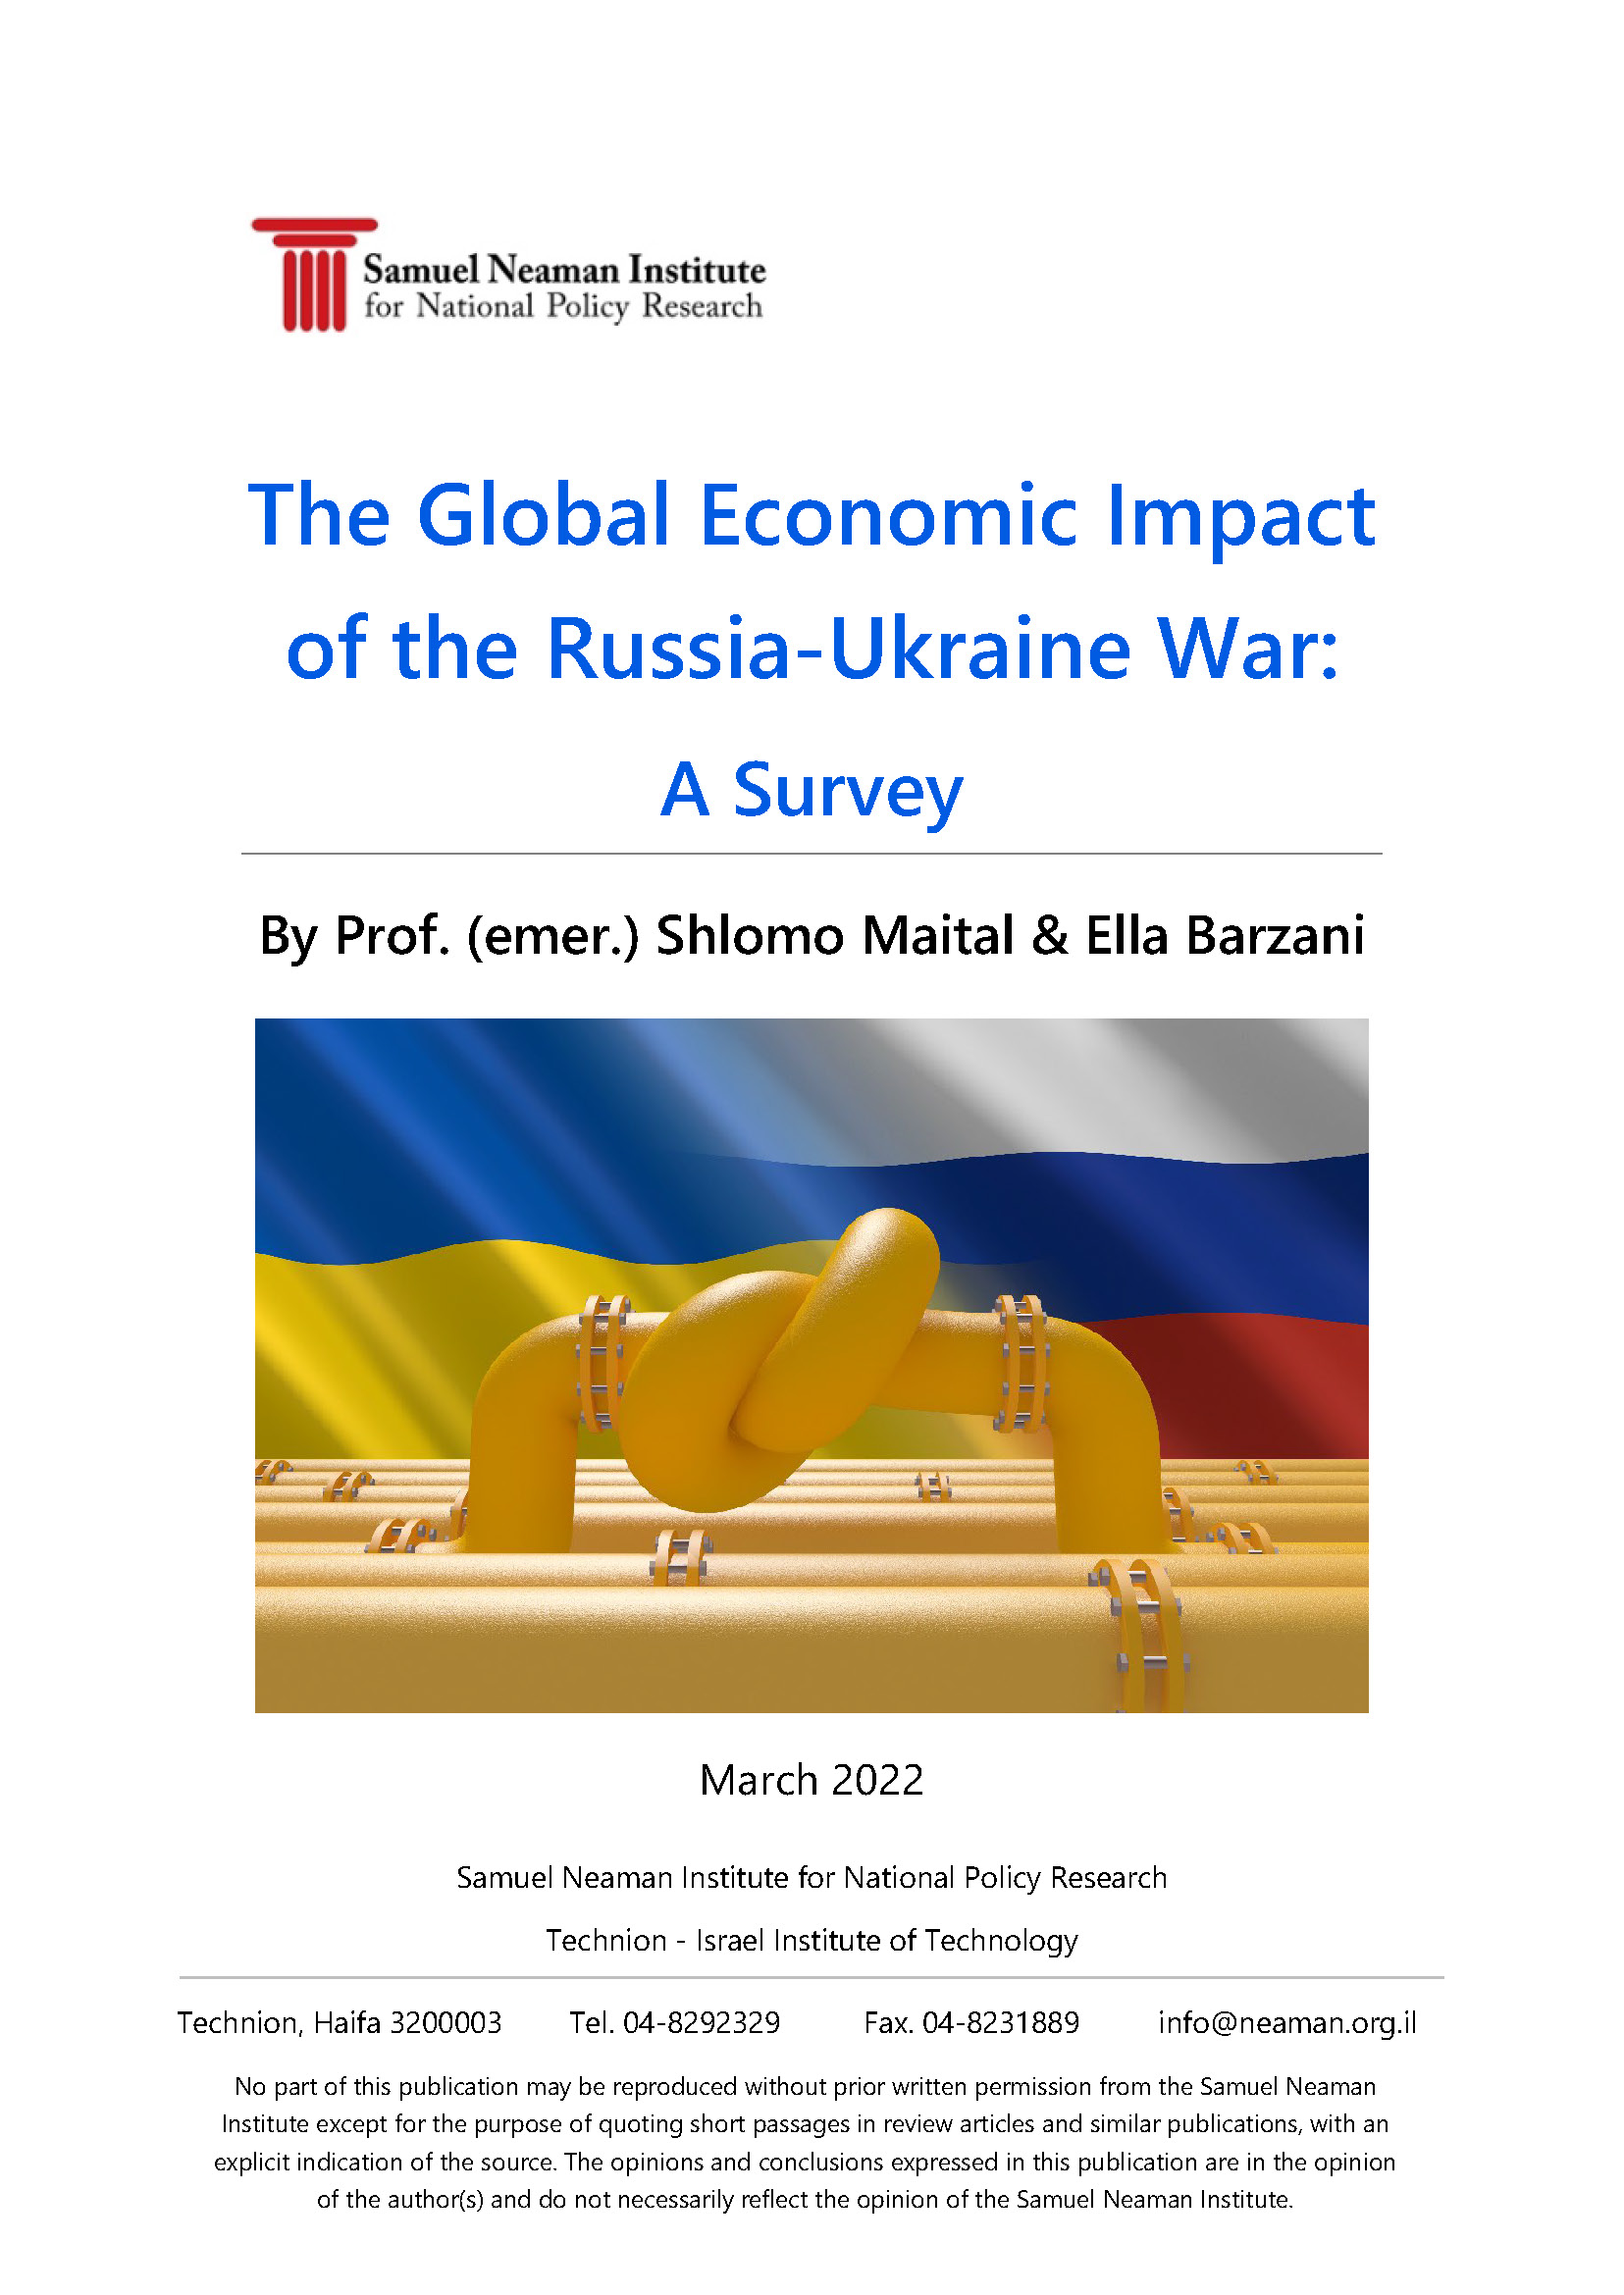 ההשפעה הכלכלית הגלובלית של מלחמת רוסיה-אוקראינה